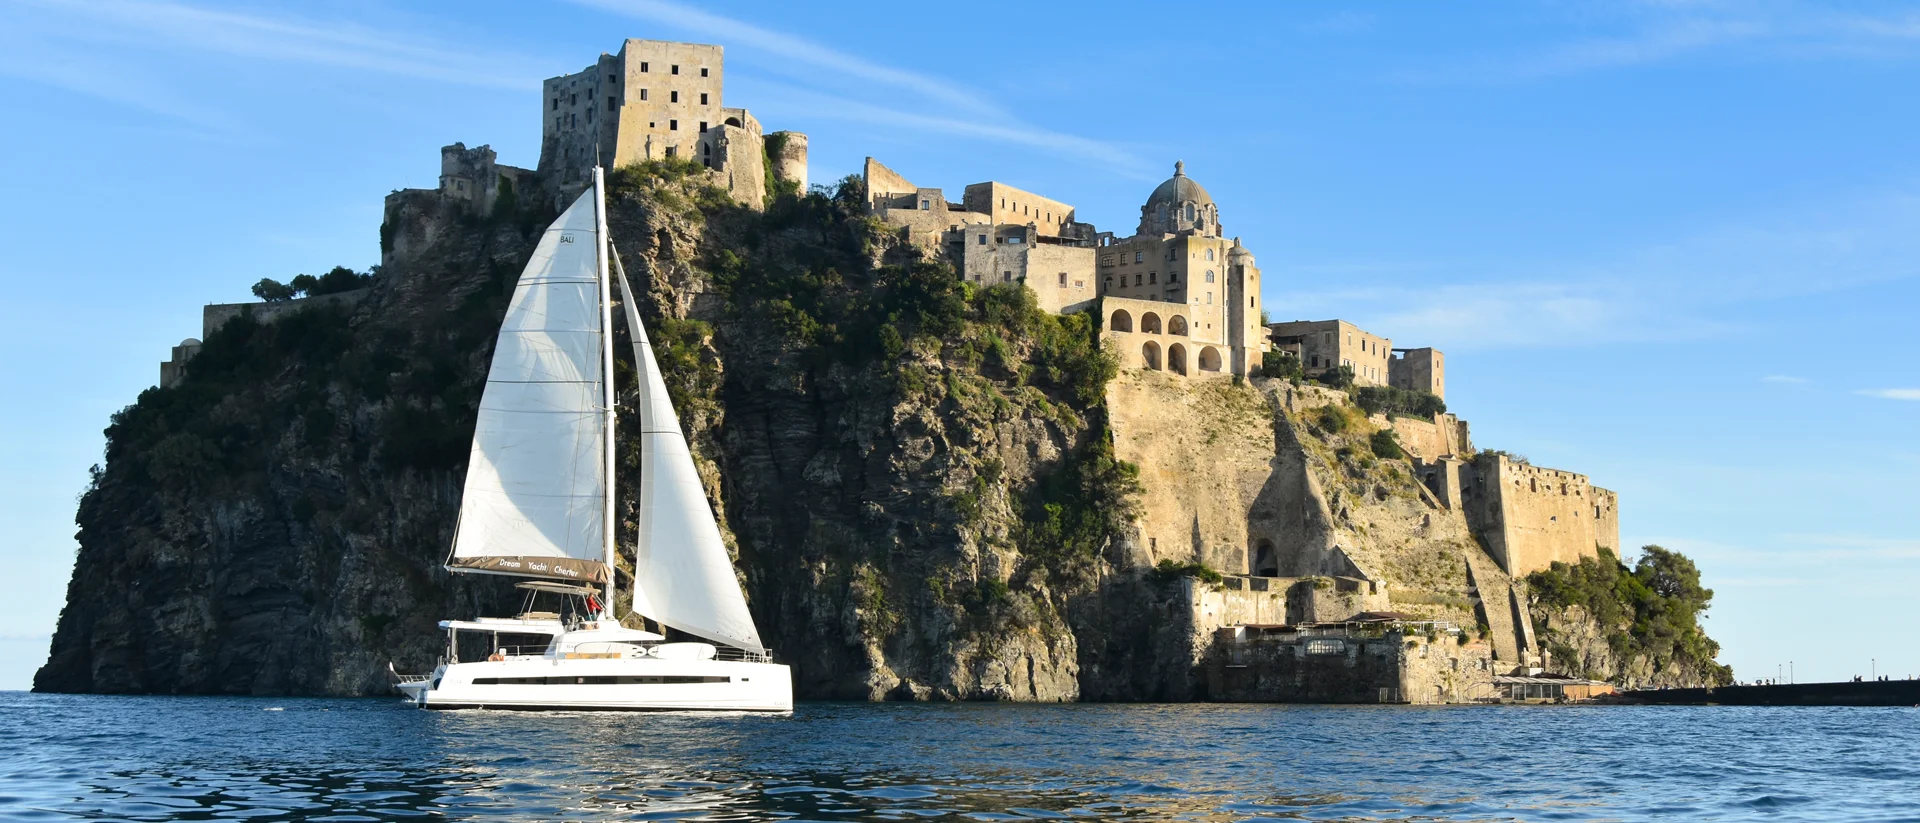 Edificio antico su un'isola durante le vacanze in barca a vela a Napoli